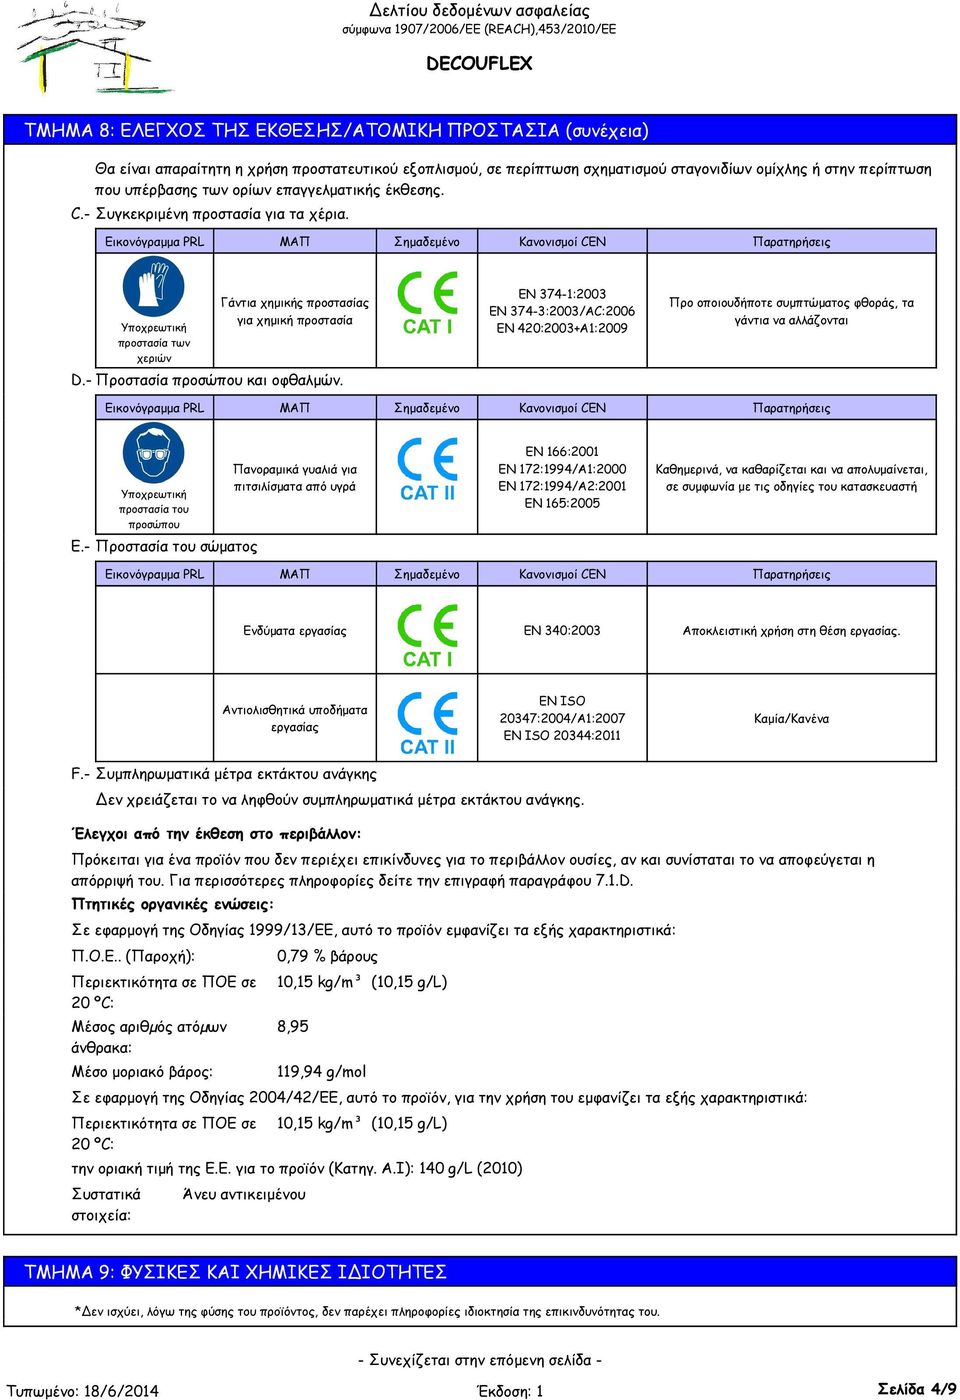 Εικονόγραμμα PRL ΜΑΠ Σημαδεμένο Κανονισμοί CEN Παρατηρήσεις Υποχρεωτική προστασία των χεριών Γάντια χημικής προστασίας για χημική προστασία EN 374-1:2003 EN 374-3:2003/AC:2006 EN 420:2003+A1:2009 Προ